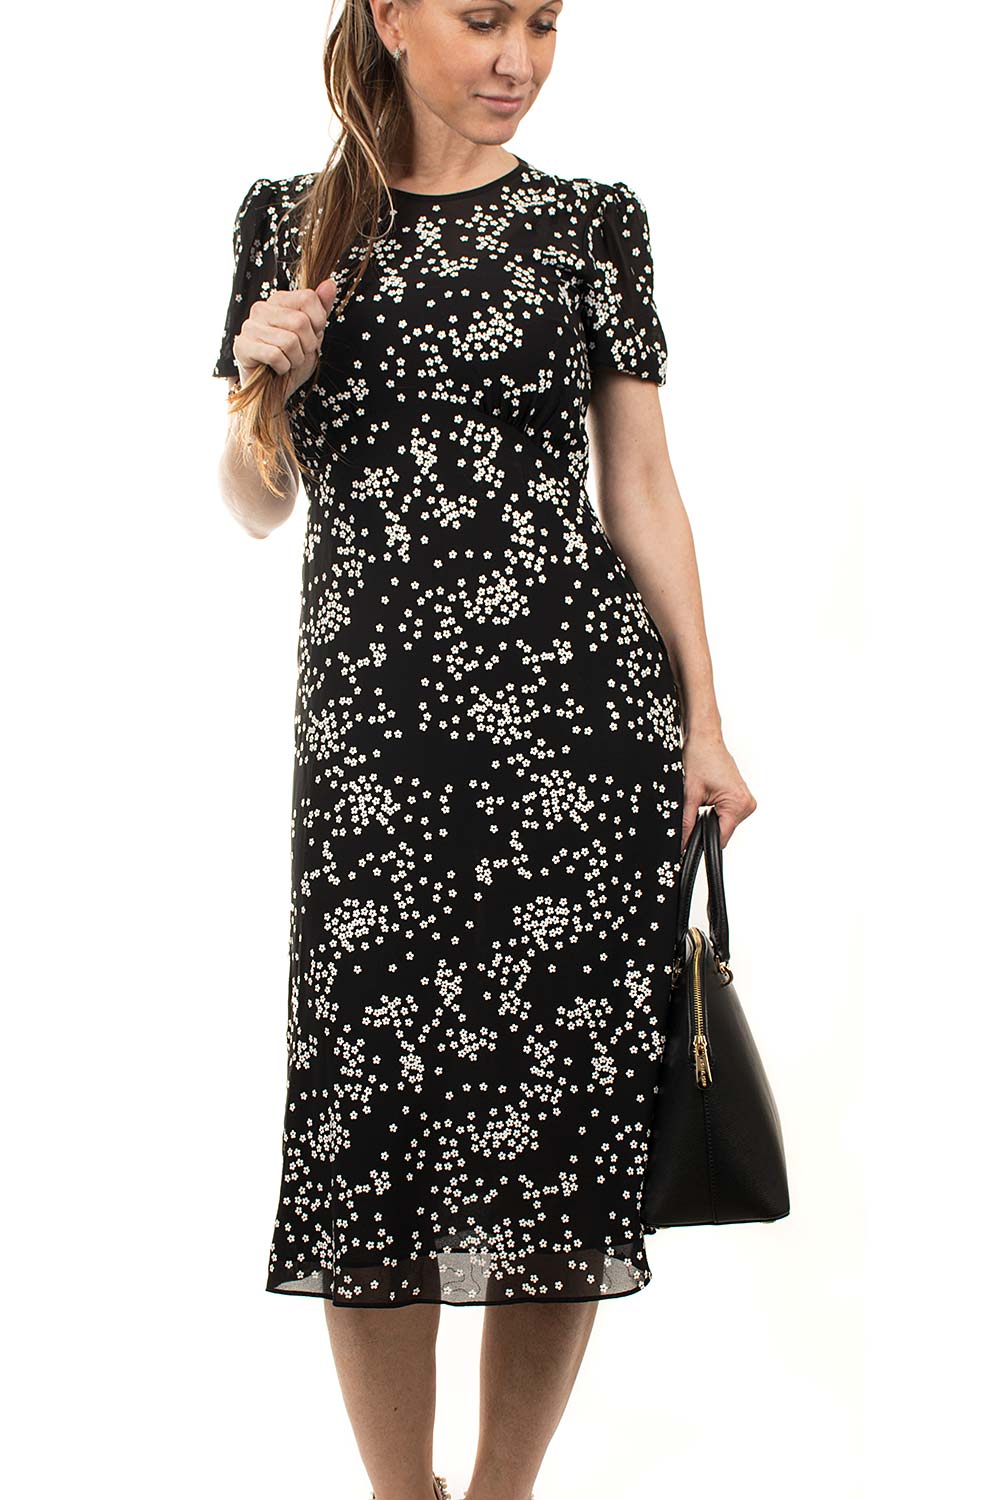 Michael Kors dámské šaty černé s kytičkami Velikost: M